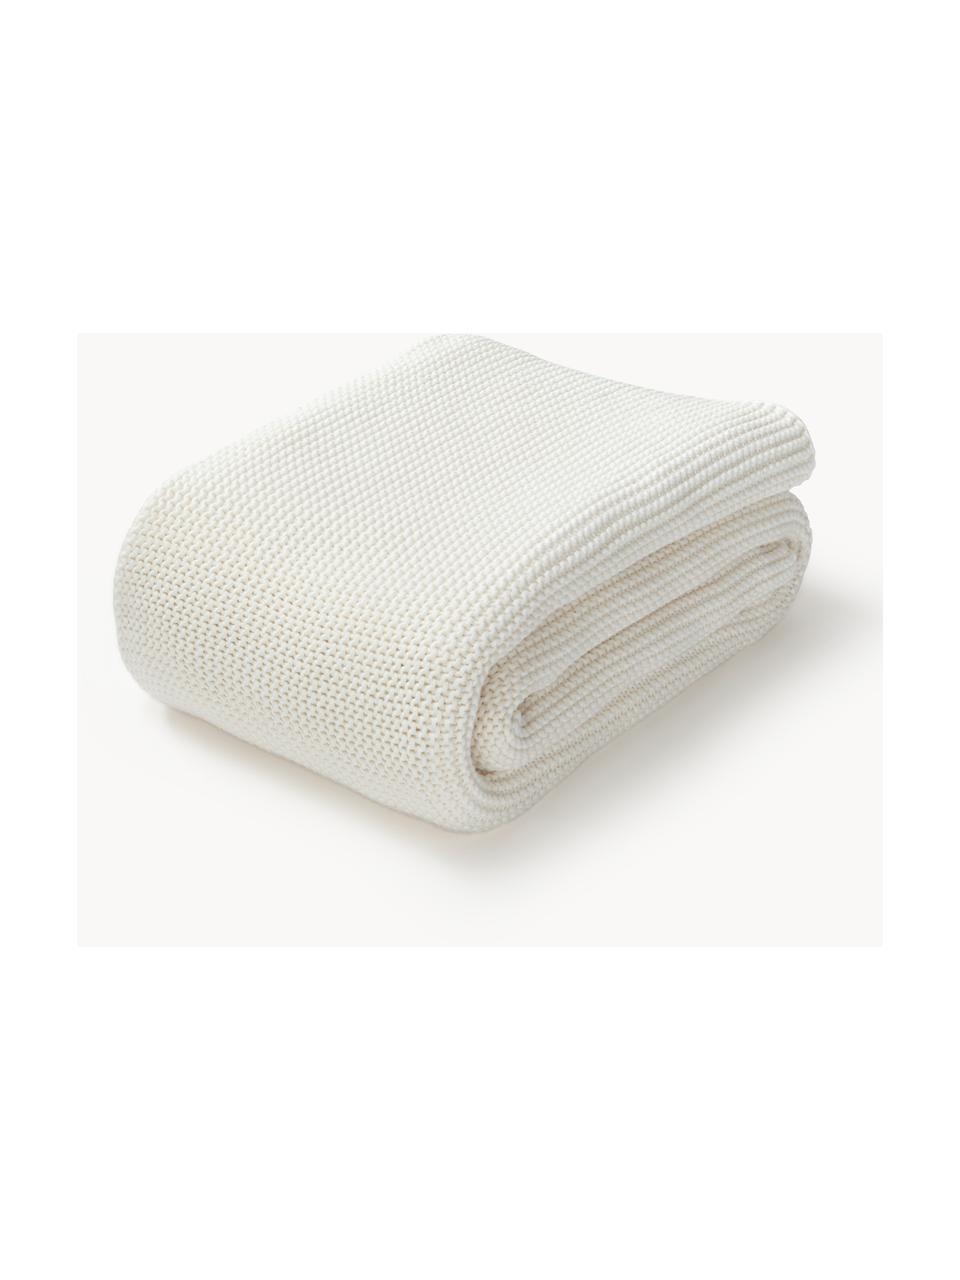 Plaid en tricot de coton bio Aladyn, 100 % coton bio, certifié GOTS, Blanc cassé, larg. 150 x long. 200 cm